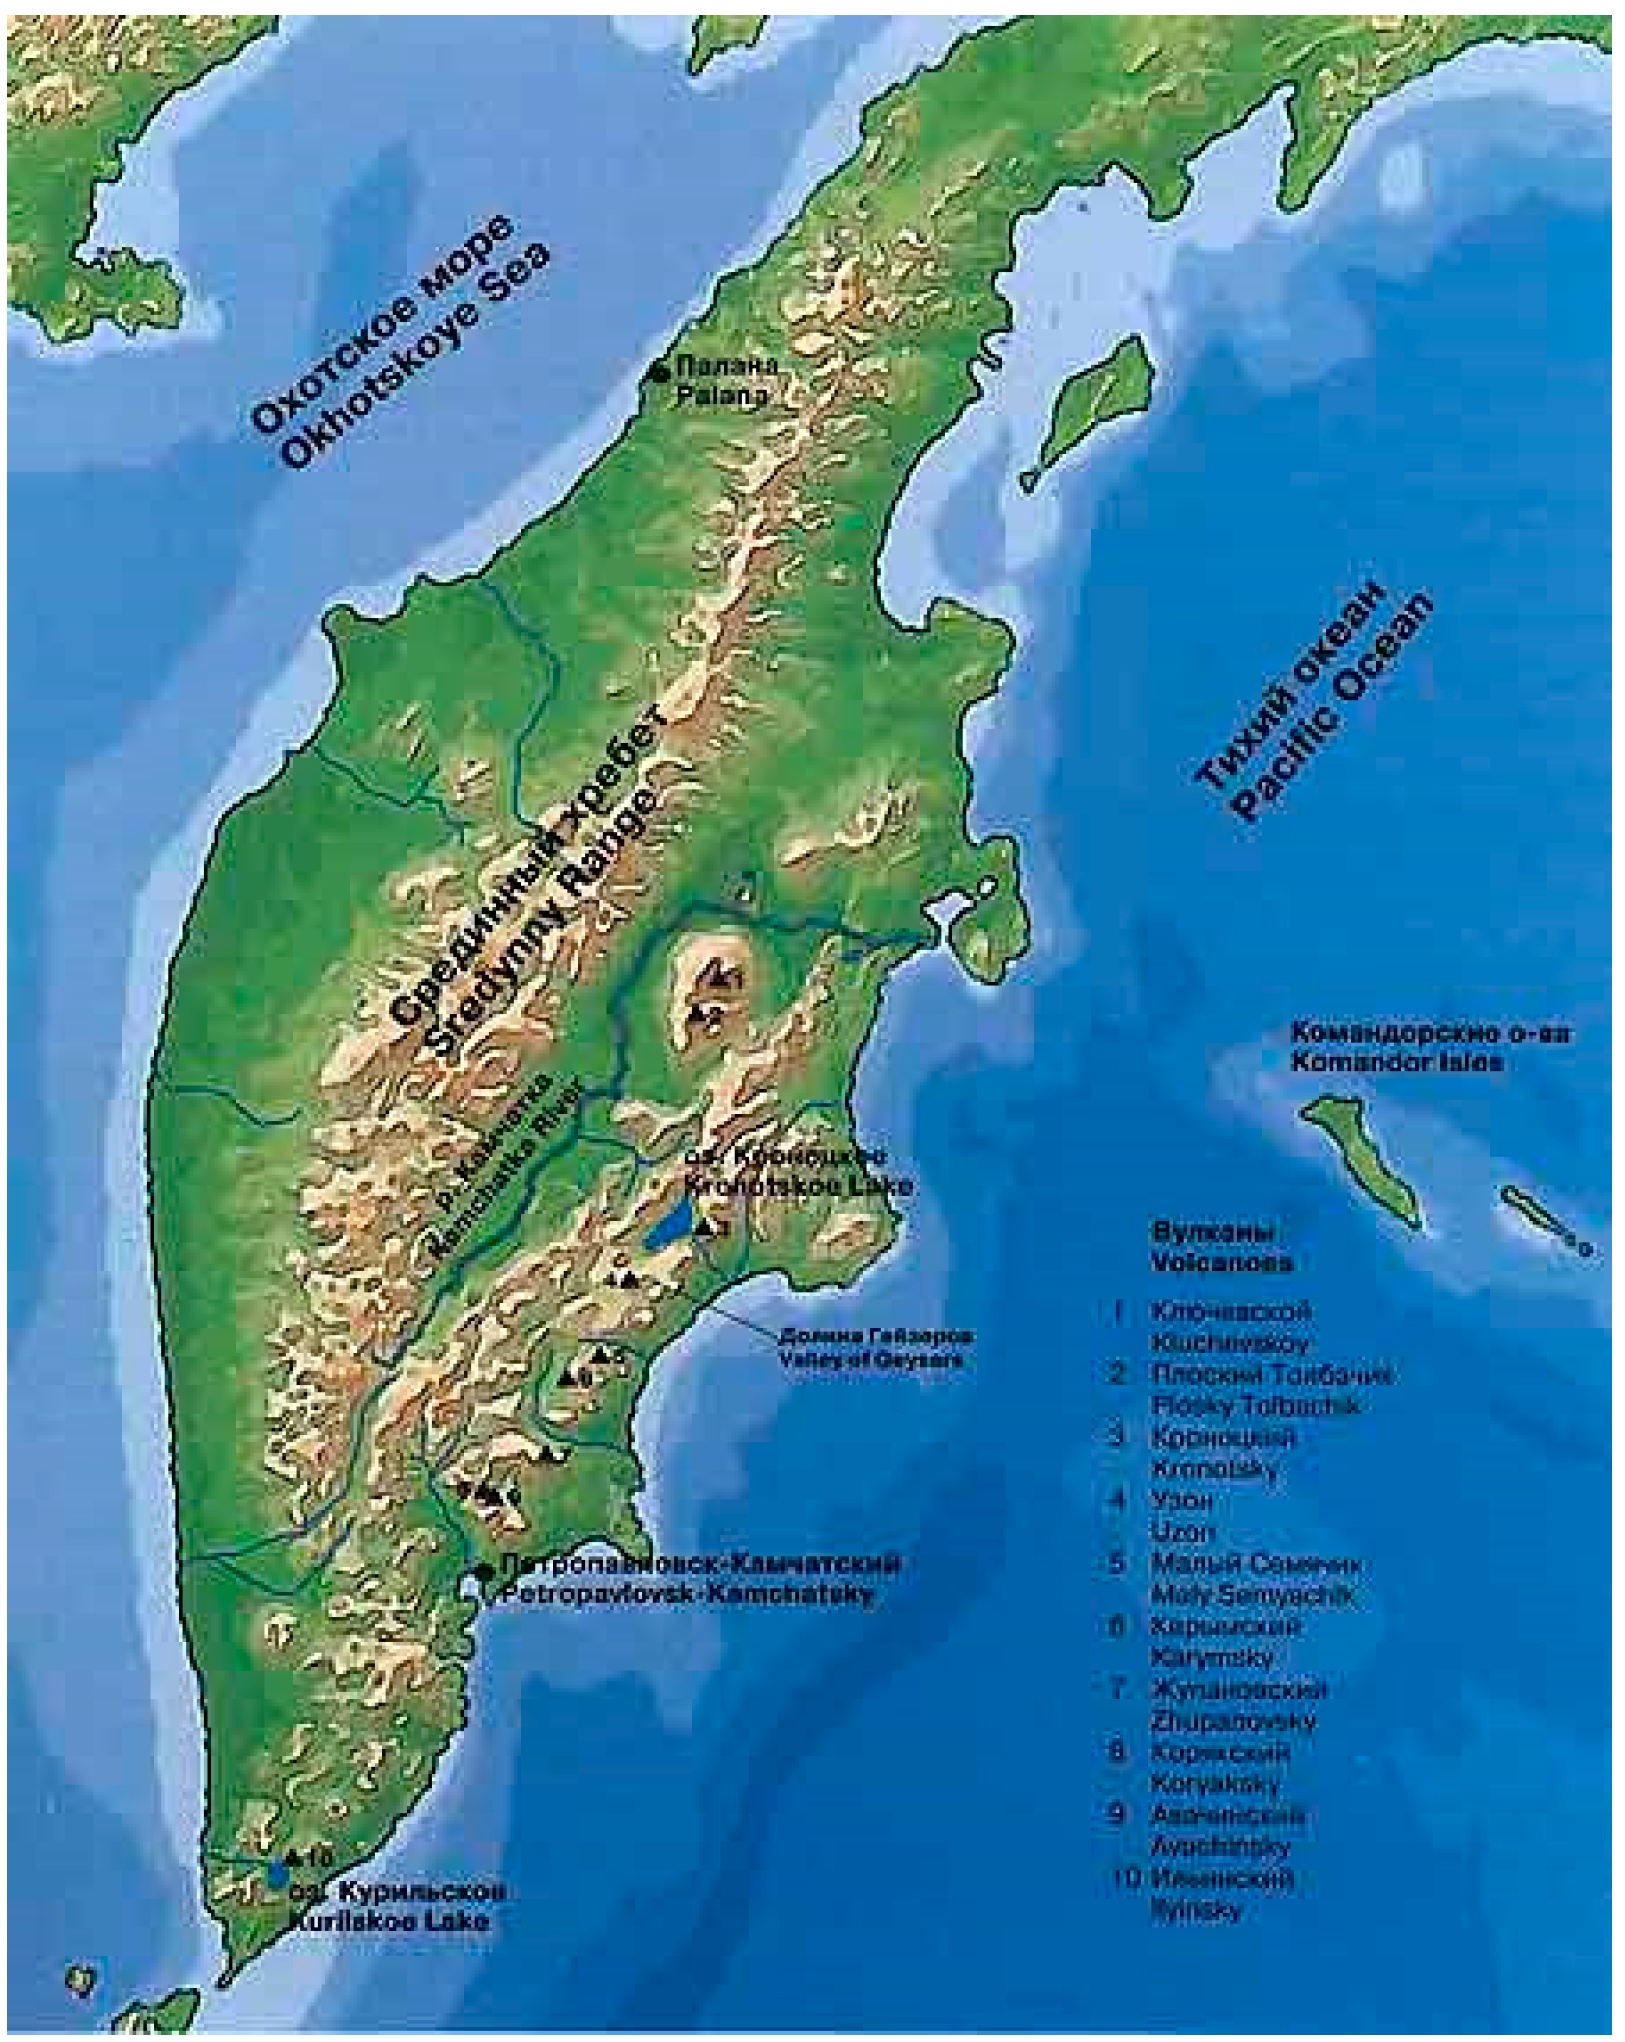 Показать карту где находится камчатка. Полуостров Камчатка на карте. Камчатский полуостров на карте. Срединный хребет полуострова Камчатка. Полуостров Камчатка географическая карта.